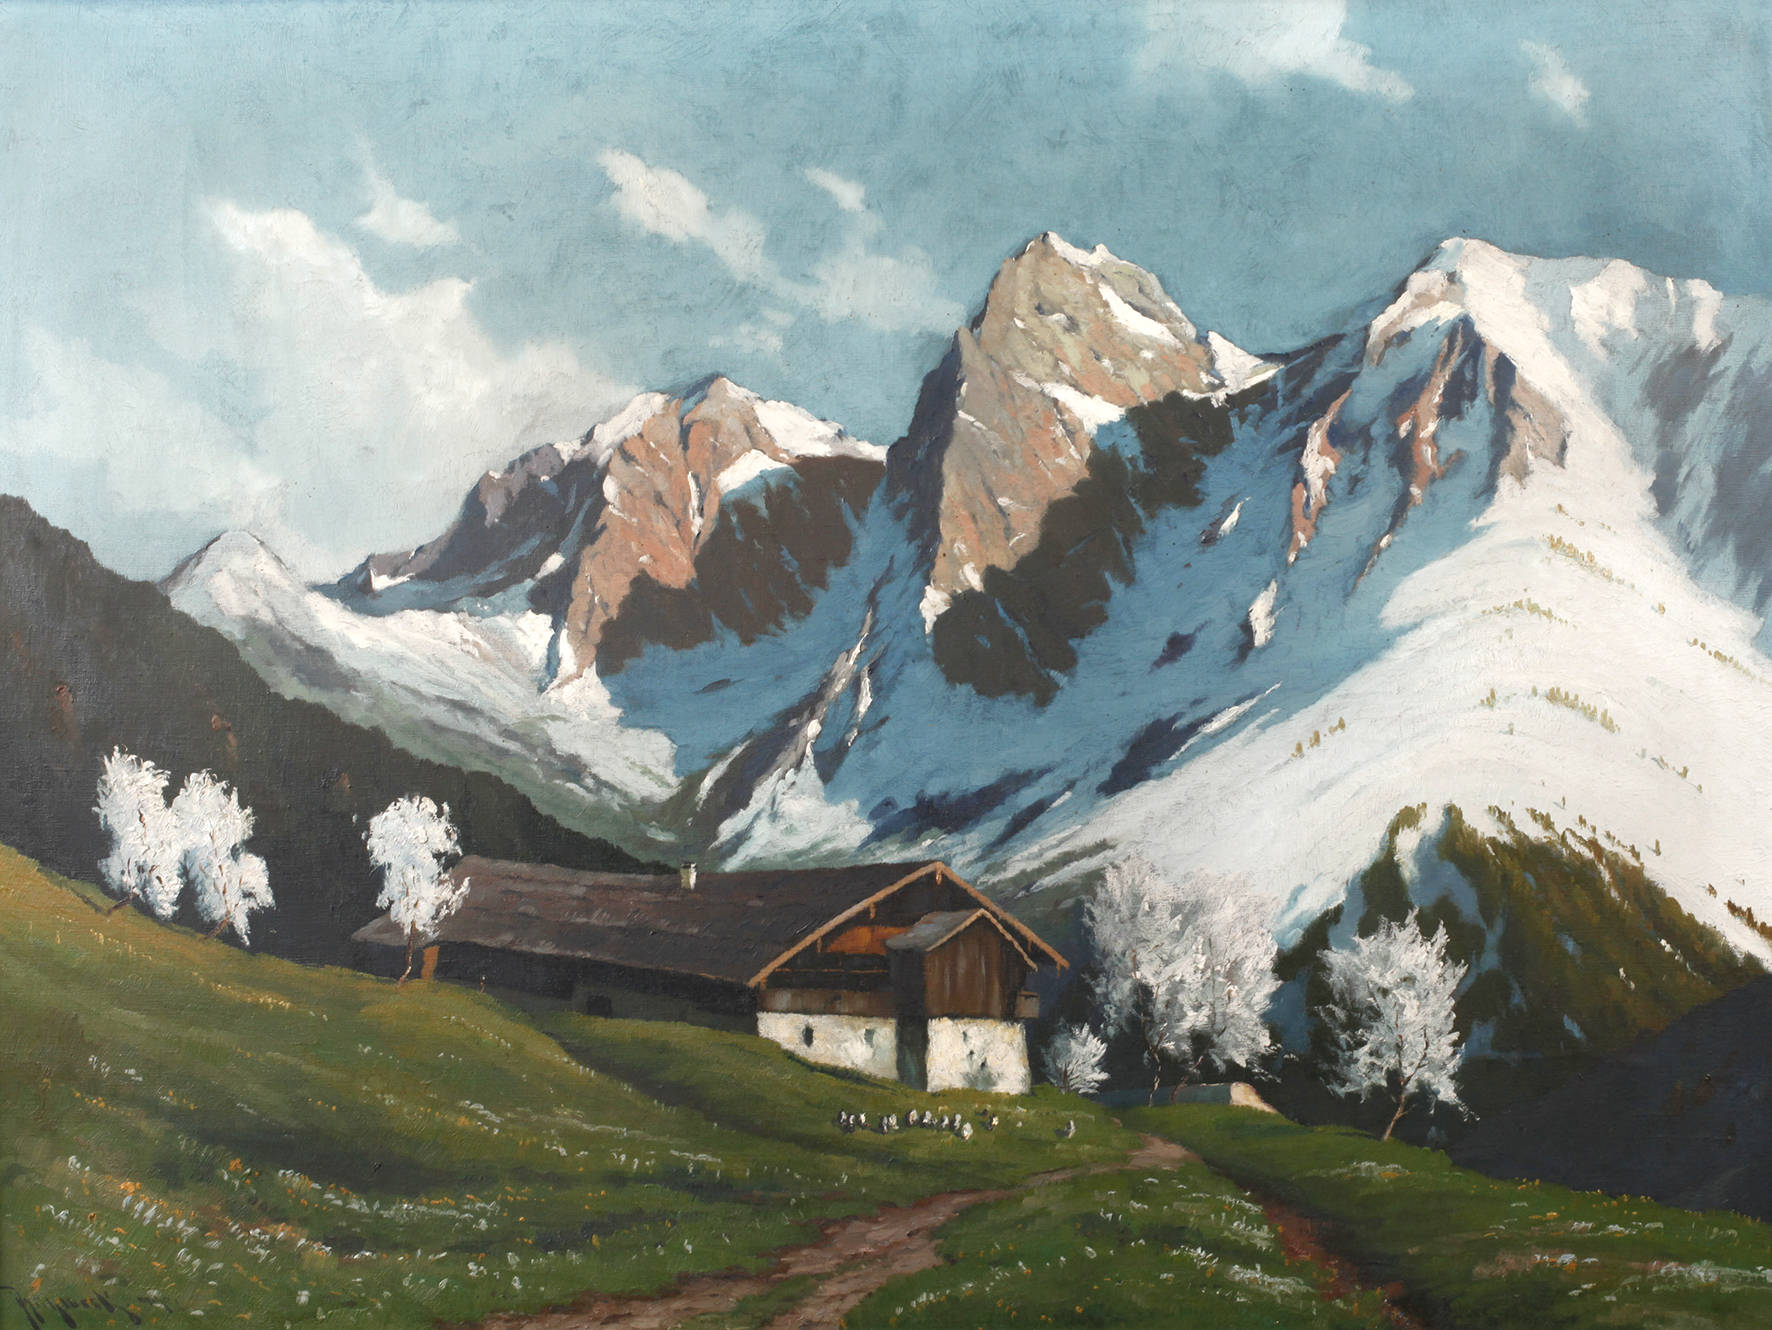 Josef Mühlbeck, ”Bergfrühling”